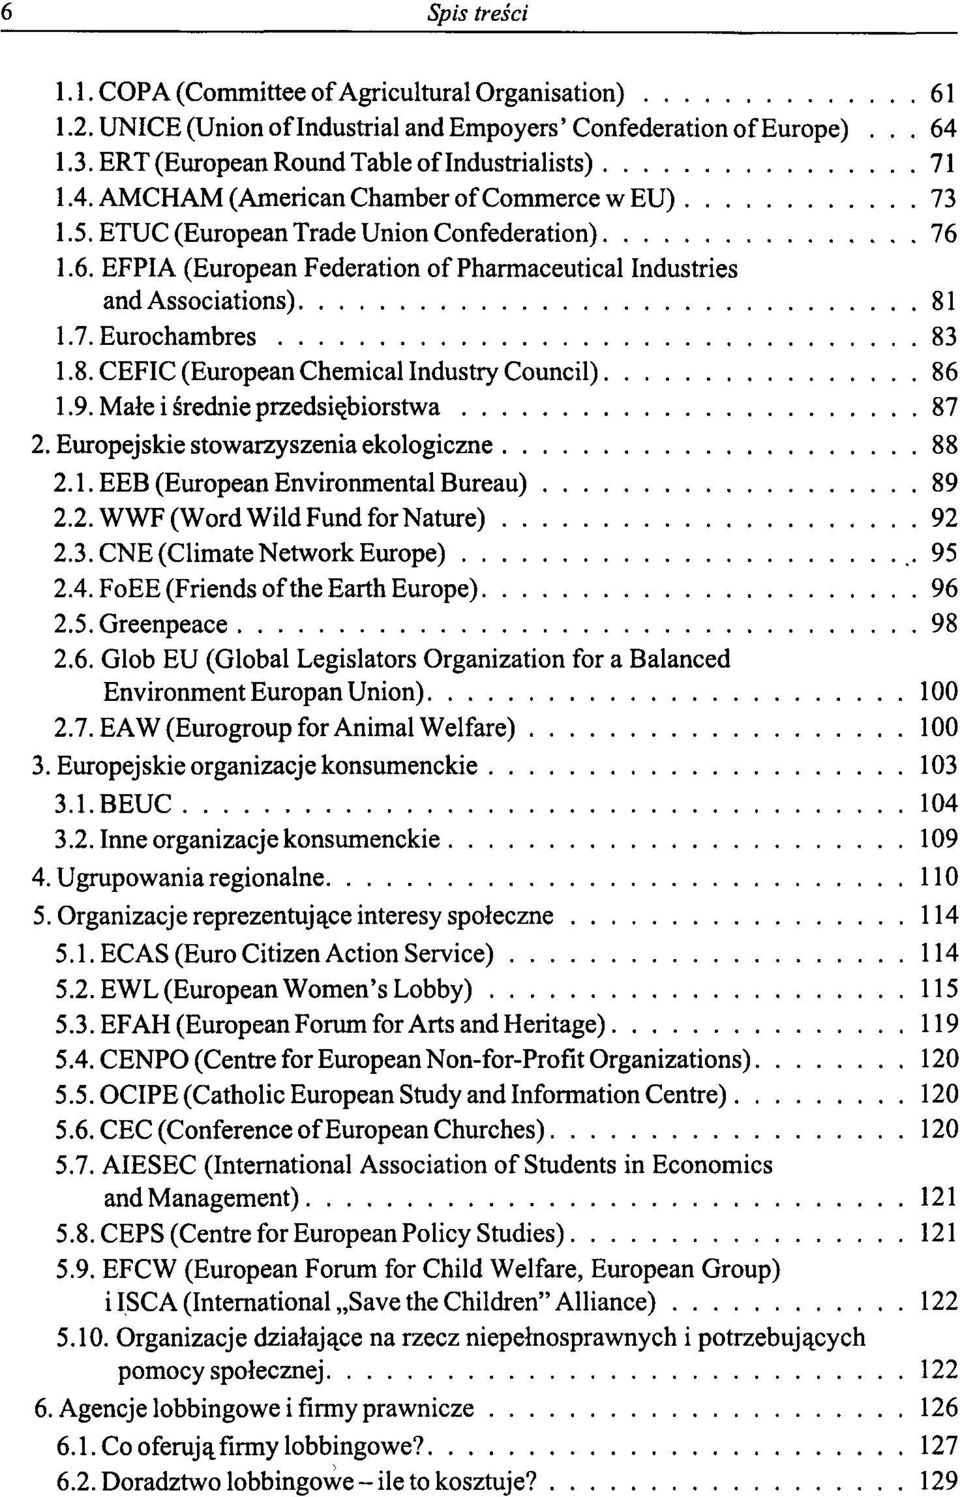 9. Małe i średnie przedsiębiorstwa 87 2. Europejskie stowarzyszenia ekologiczne 88 2.1. EEB (European Environmental Bureau) 89 2.2.WWF(WordWildFundforNature) 92 2.3. CNE (ClimateNetwork Europę),95 2.